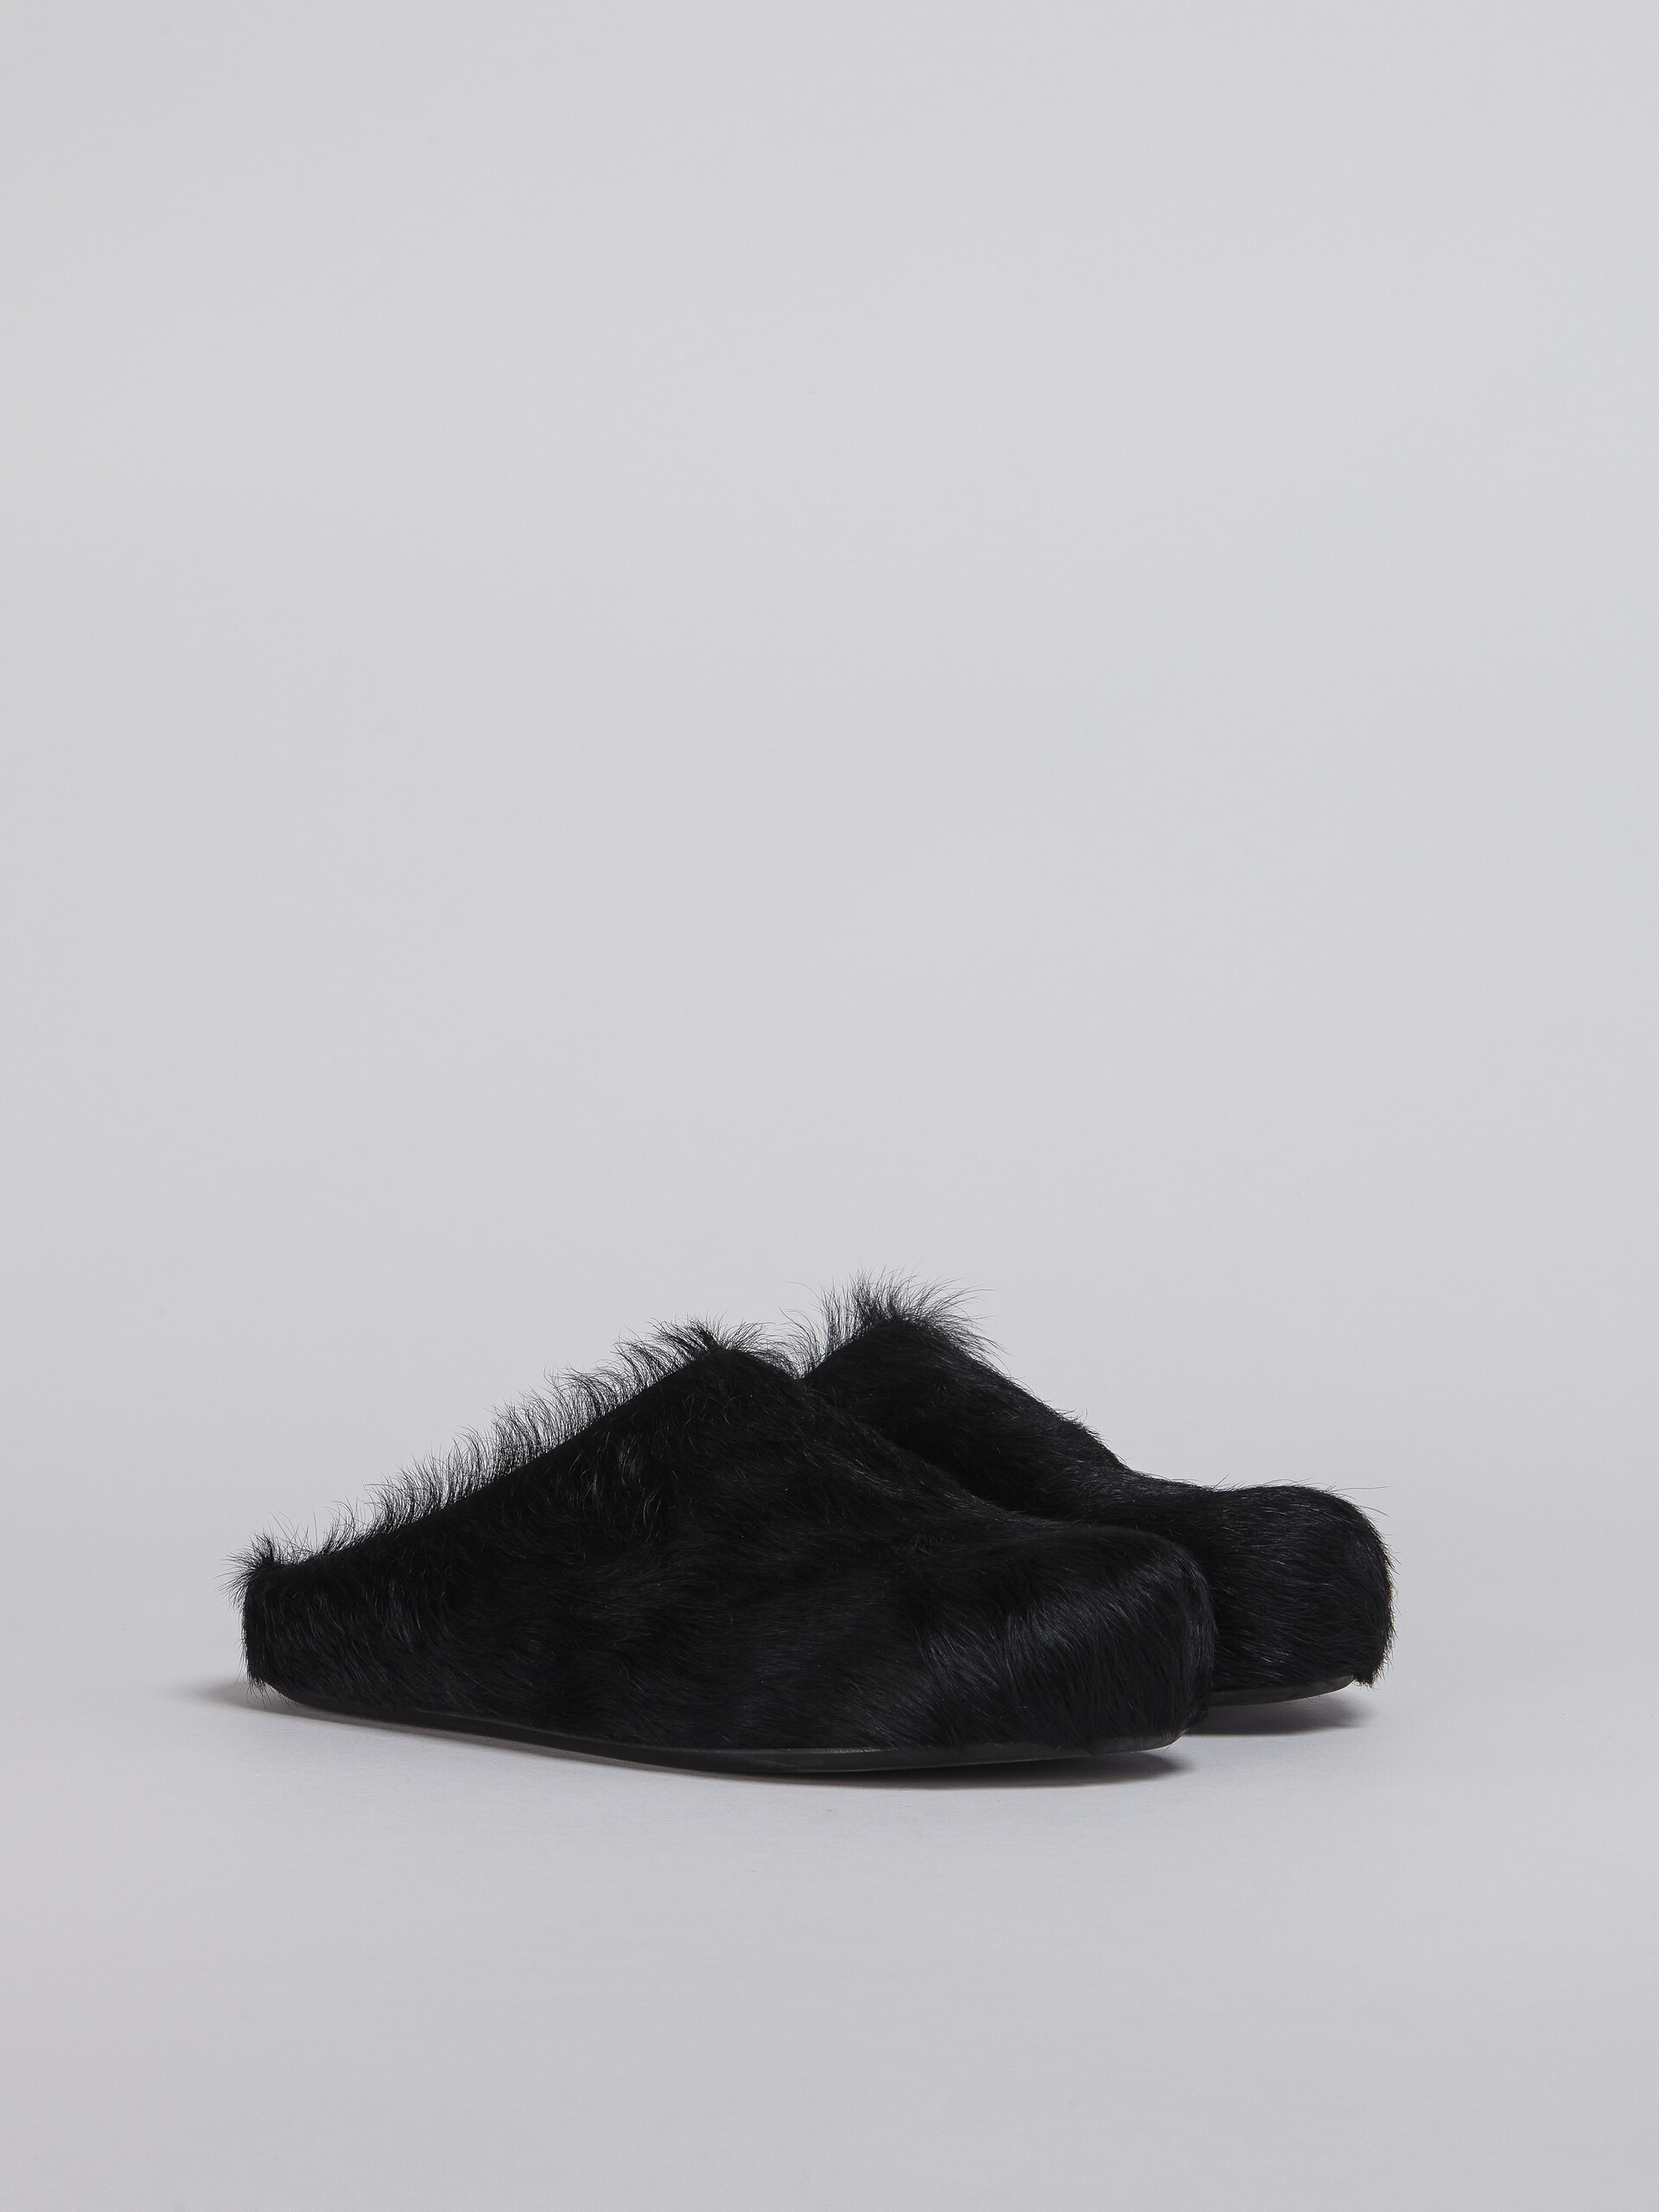 Black long hair calfskin Fussbett sabot - Clogs - Image 2